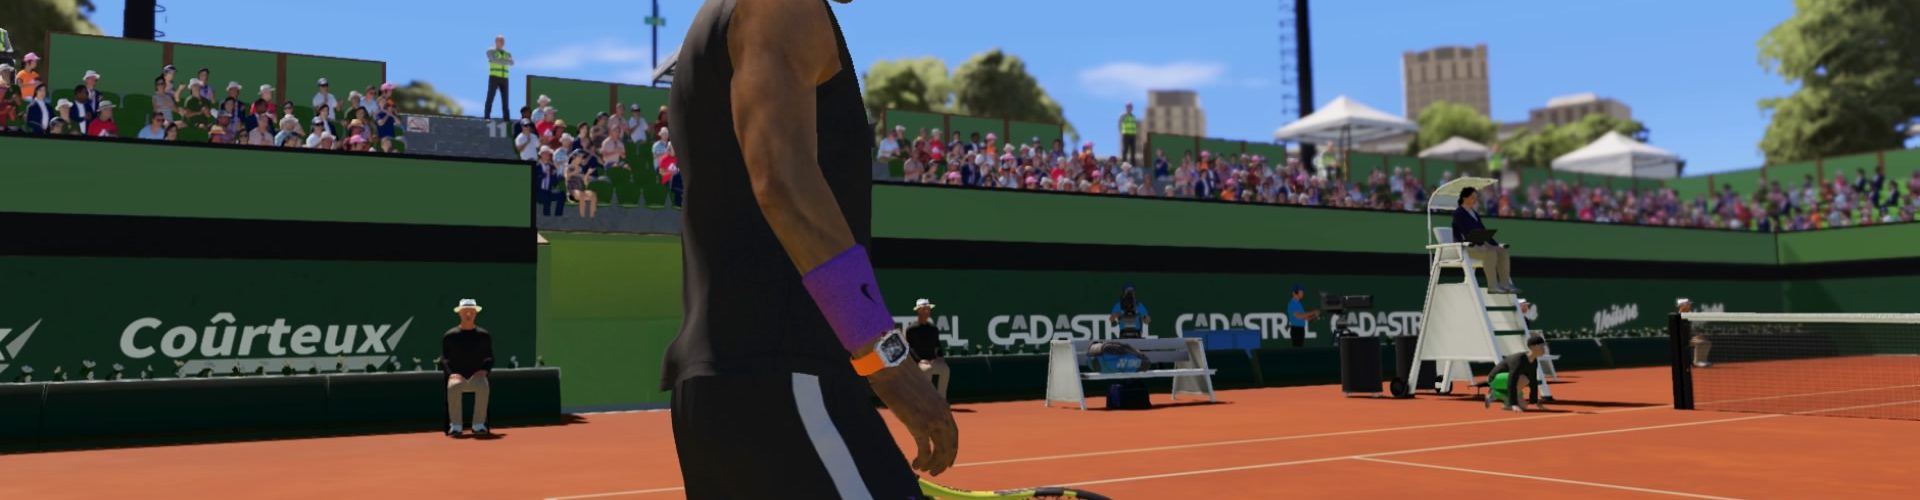 AO Tennis 2 – PS4 Review